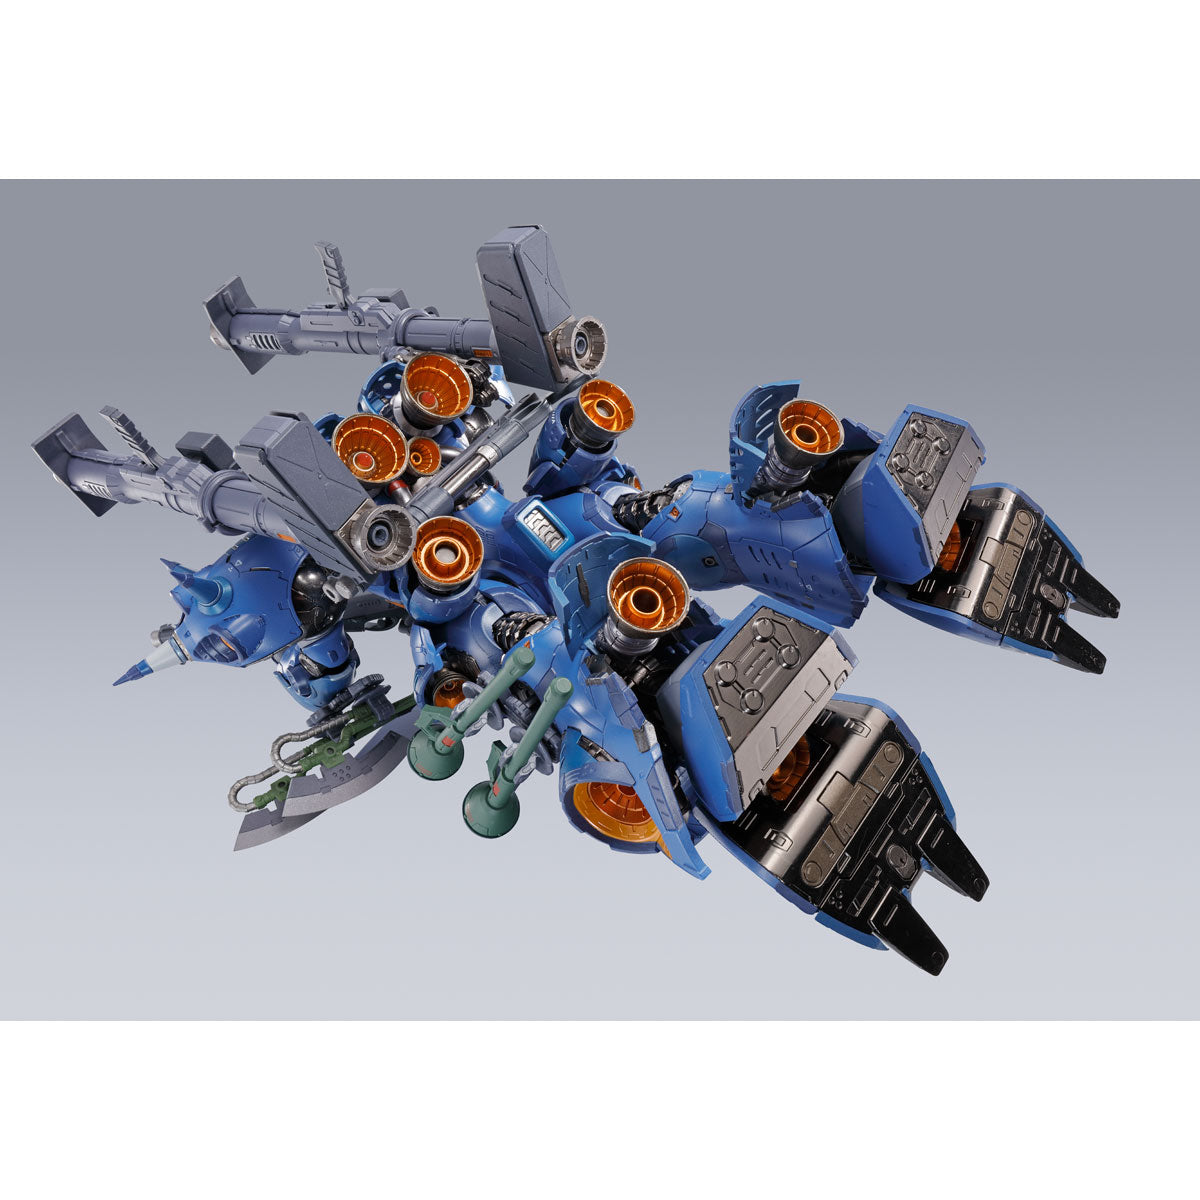 Metal Build Gundam KÄMPFER 0080